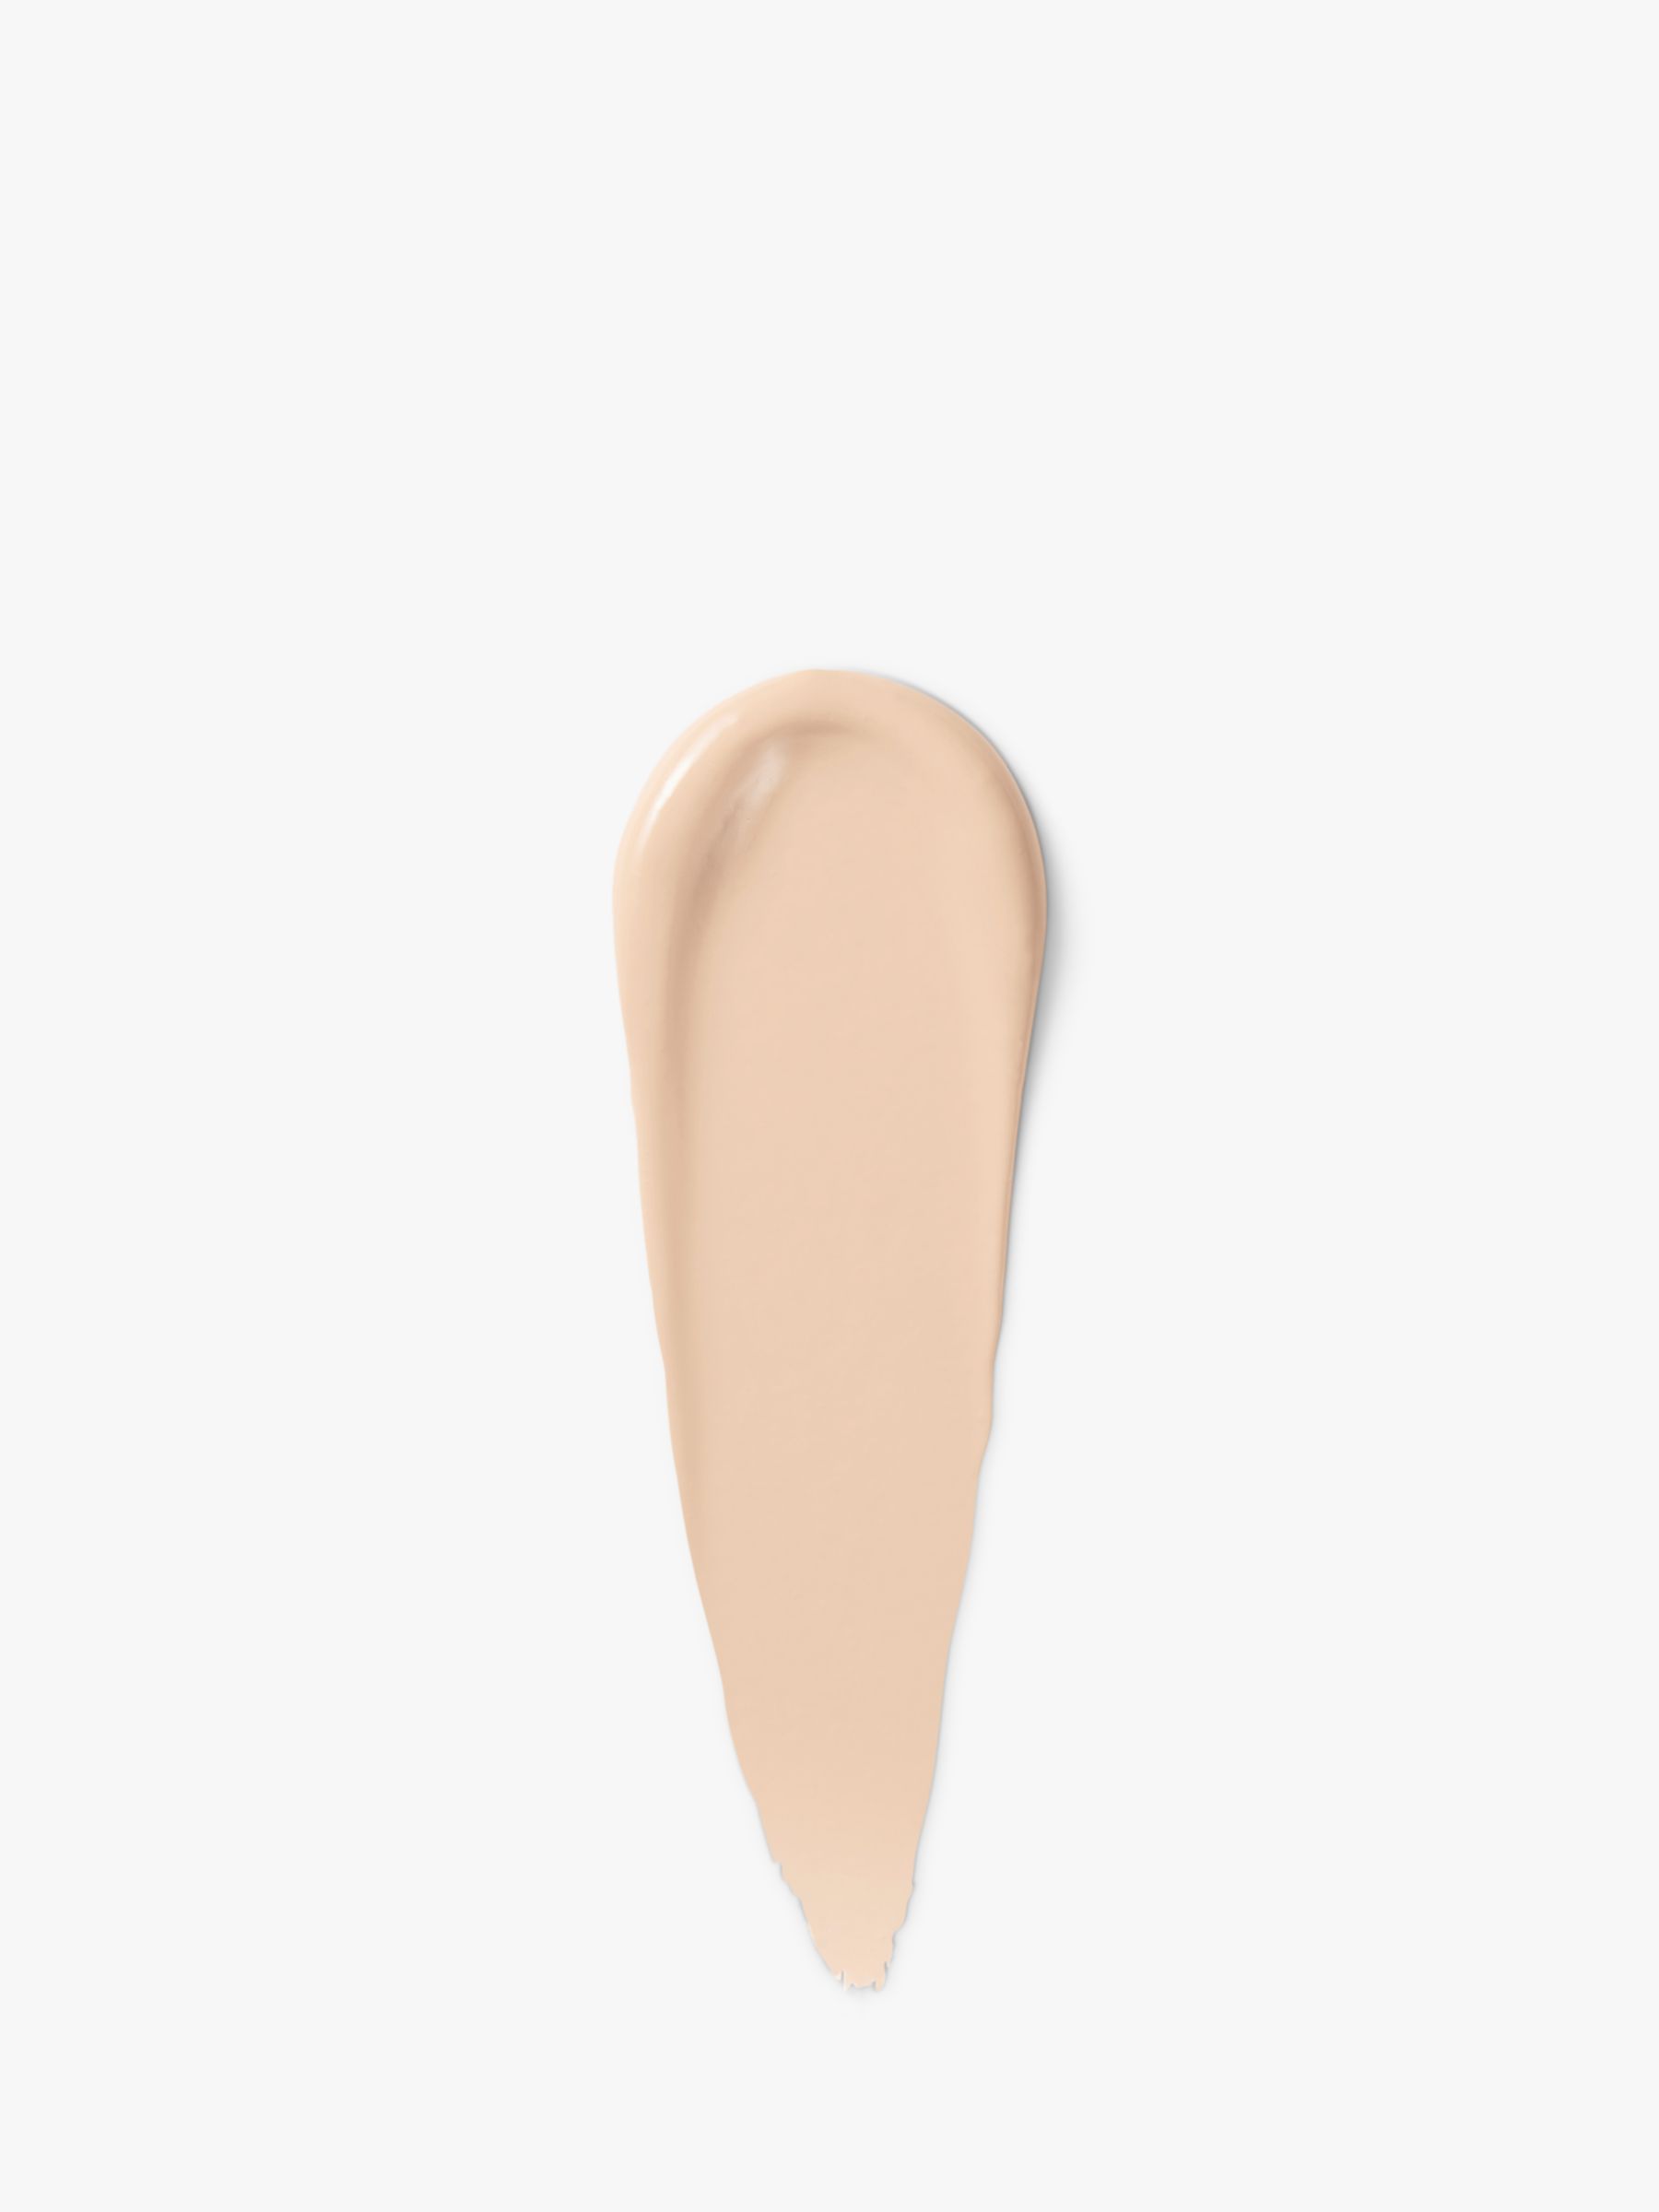 Bobbi Brown Skin Concealer Stick, Ivory 2